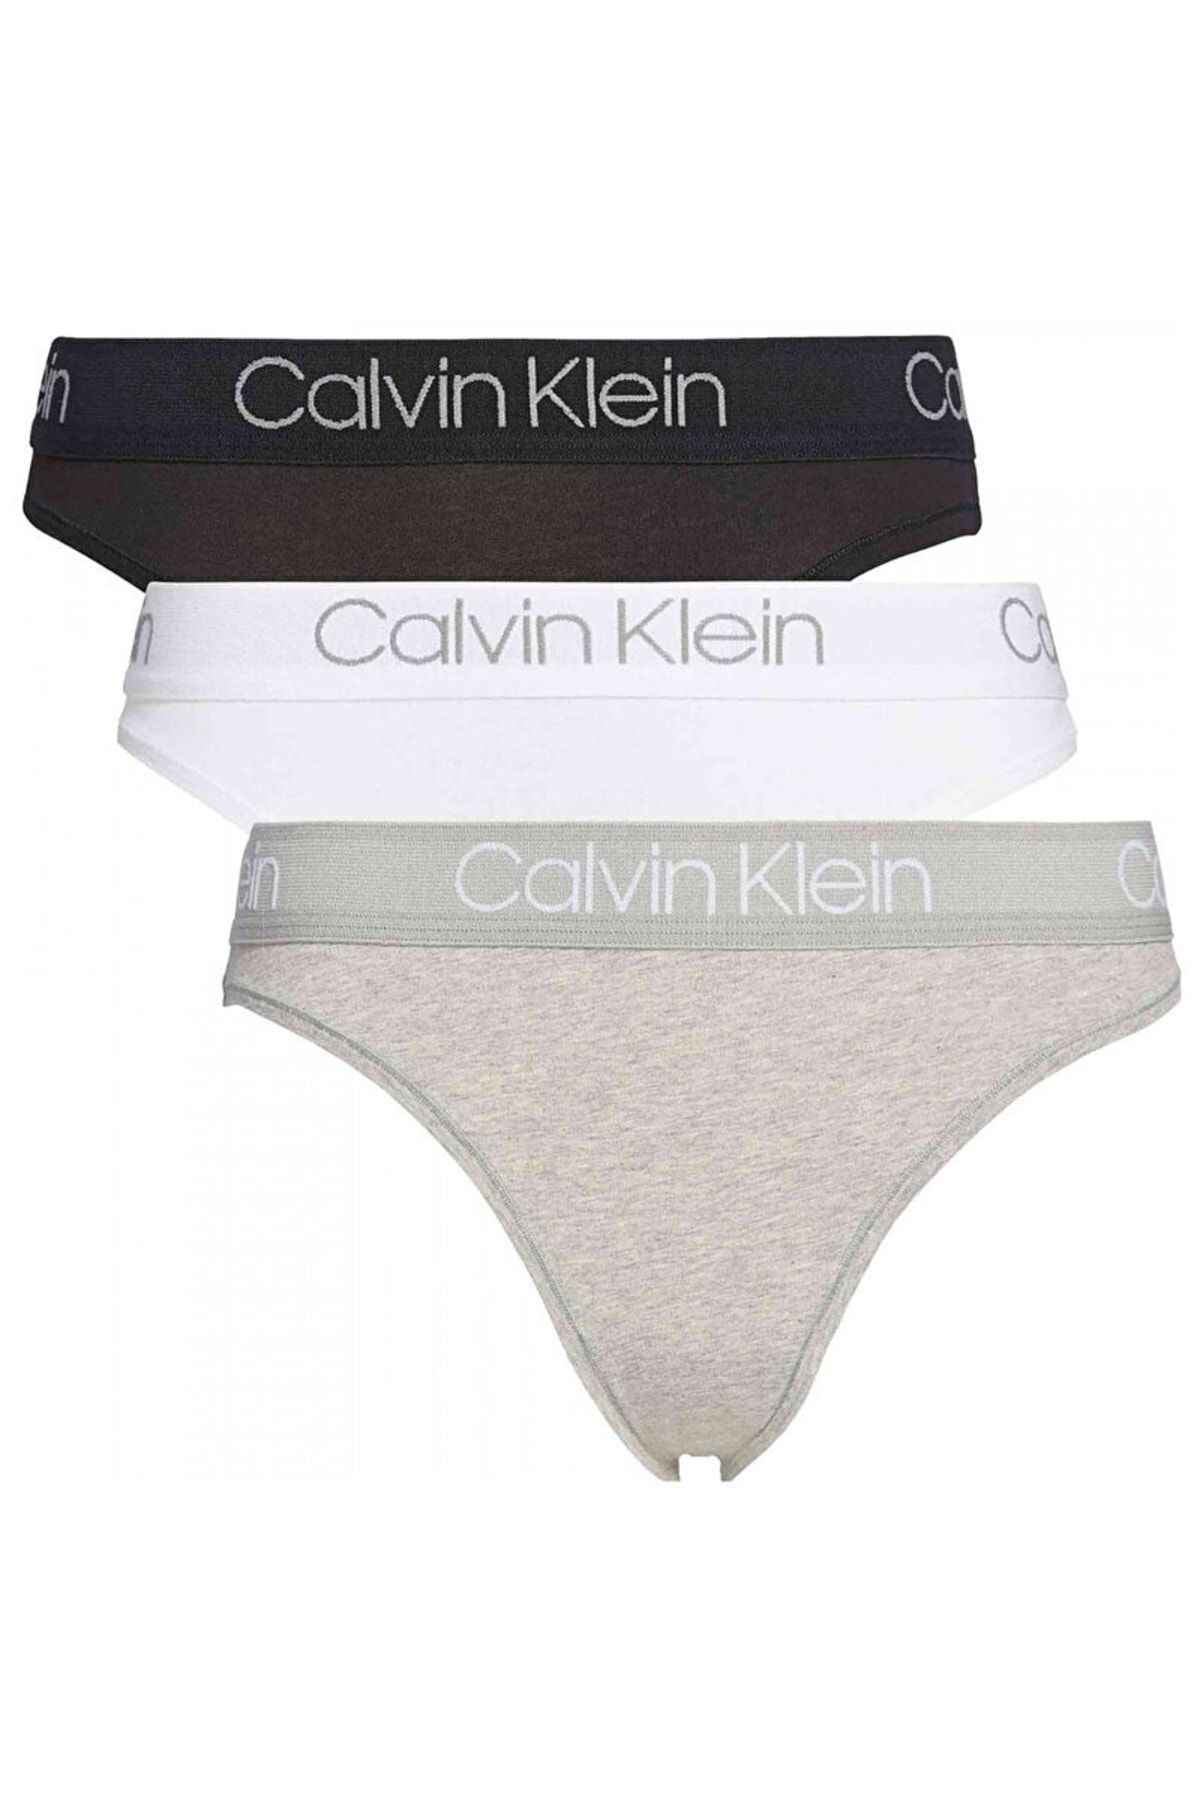 Calvin Klein Women's 3-Piece Underwear Qd3758e-999 - Trendyol